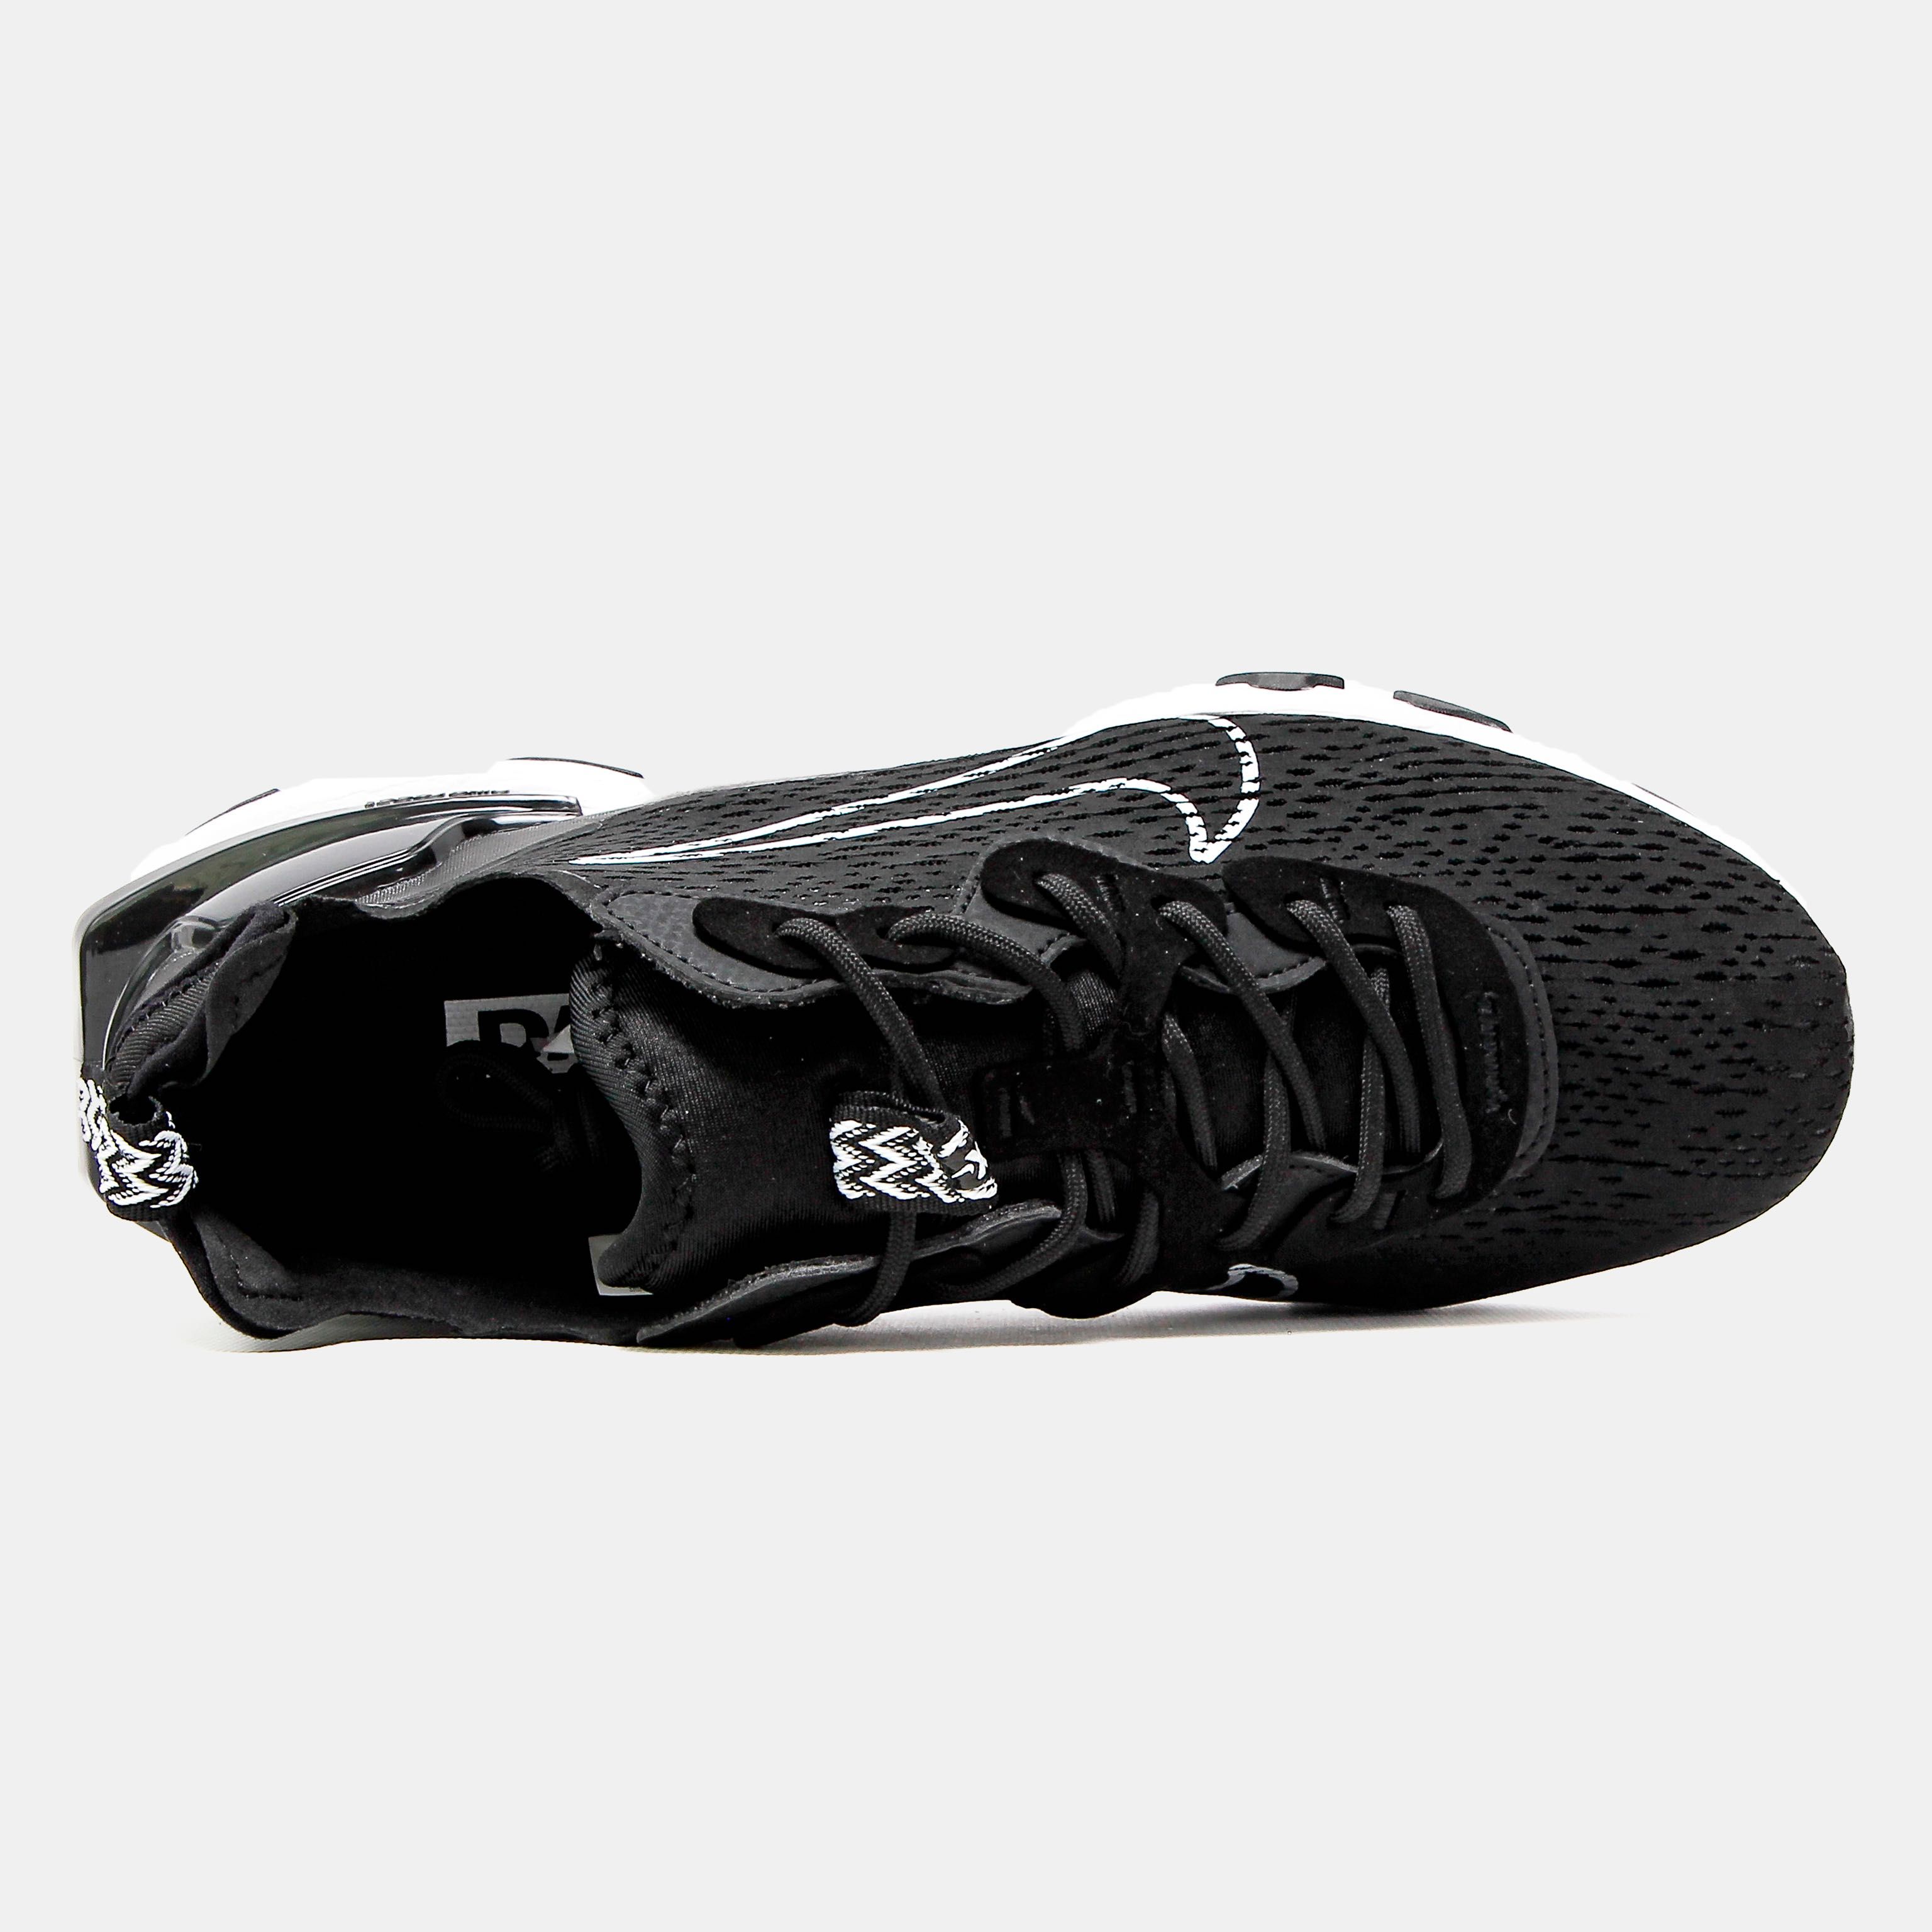 Мужские кроссовки Nike React Vision 'Black White' Размеры 41-45